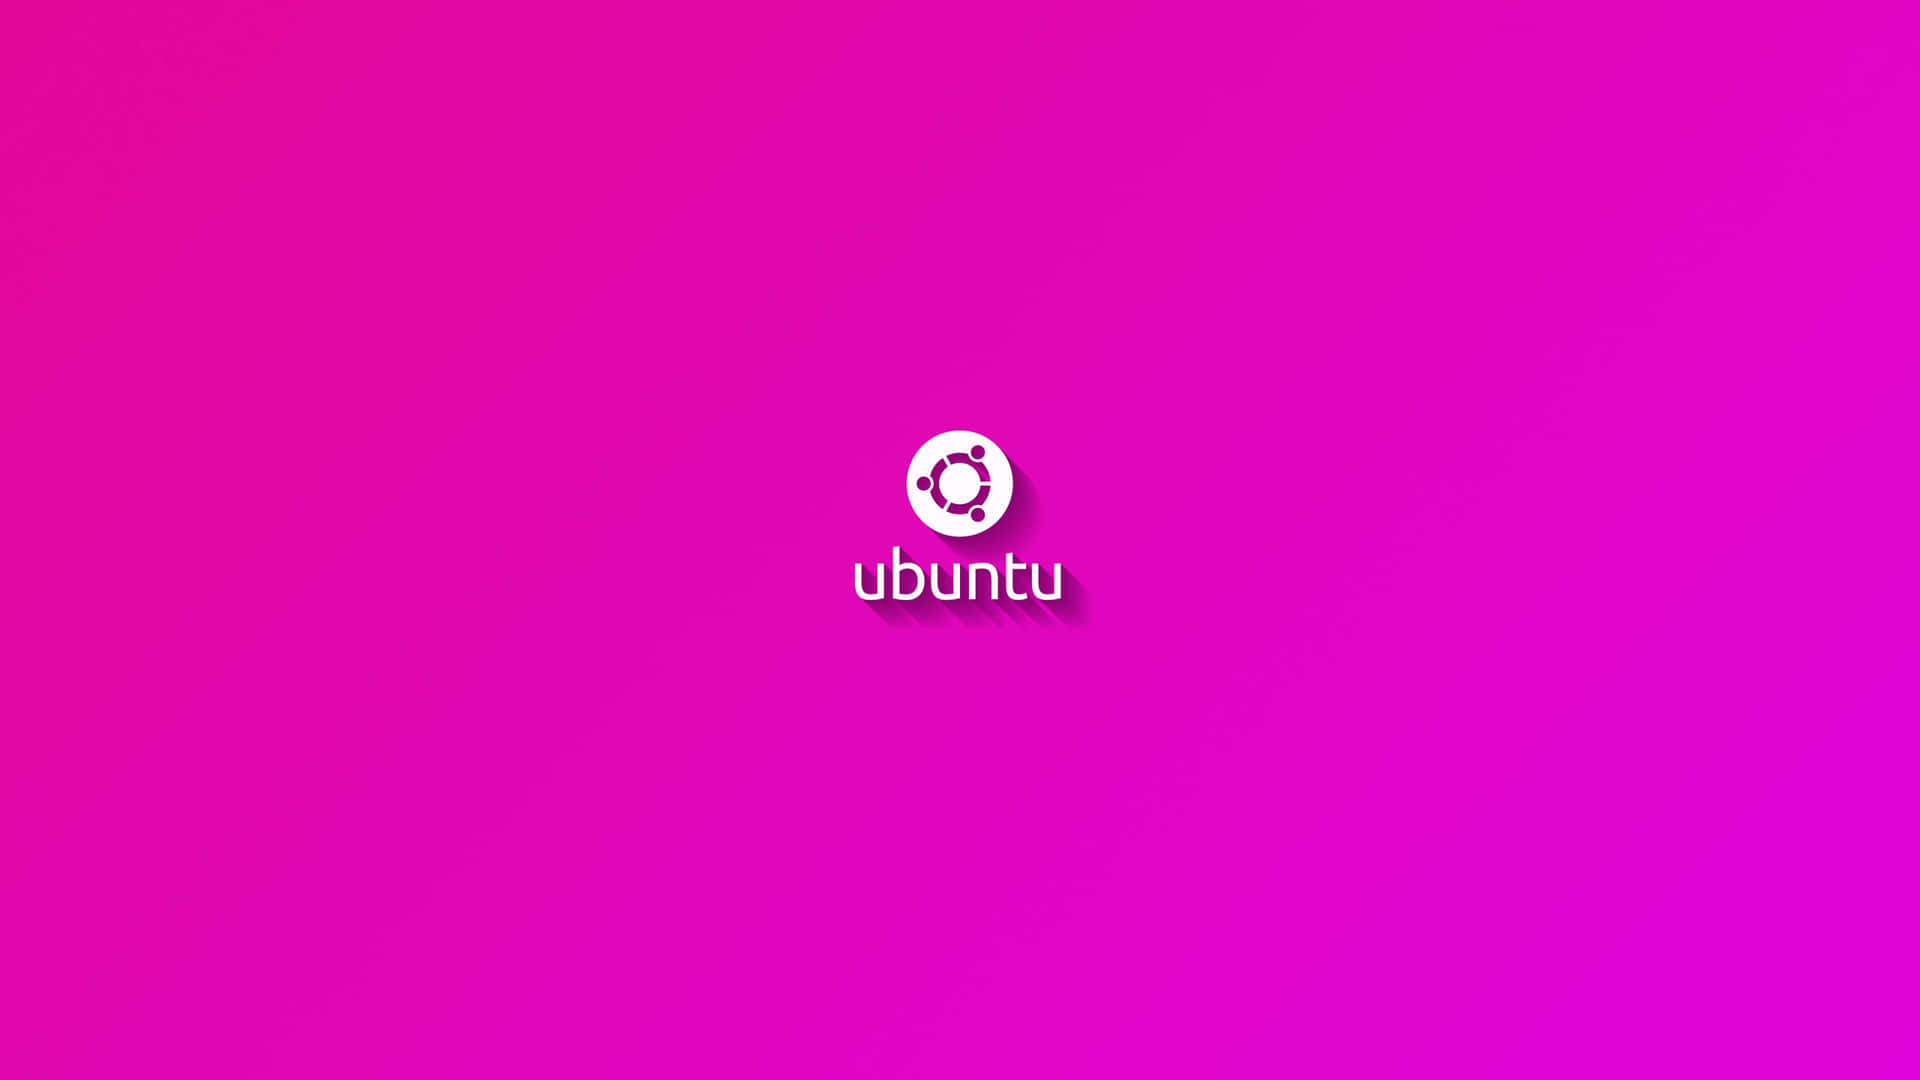 Einrosa Hintergrund Mit Dem Wort Ubuntu Darauf. Wallpaper